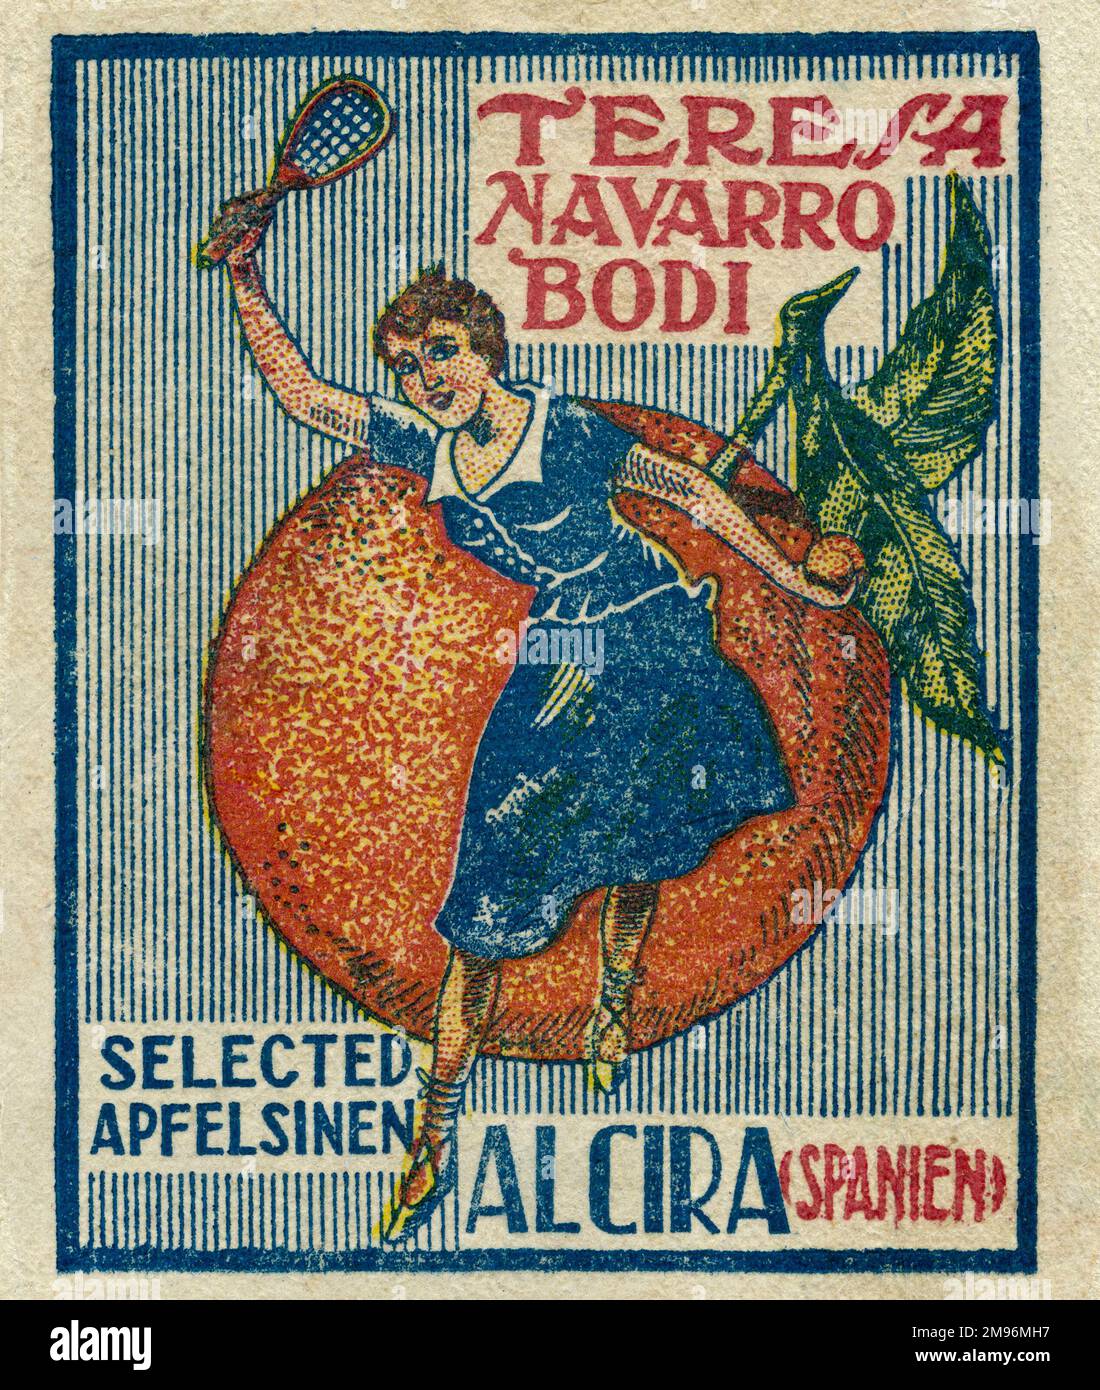 Étiquette de fruits -- Teresa Navarro Bodi sélection d'oranges (ou de cidre d'orange) d'Alcira, Valence, Espagne (en allemand). Représentant une femme dans une robe bleue avec une batte dans une main et une orange dans l'autre, debout devant une orange géante. Banque D'Images